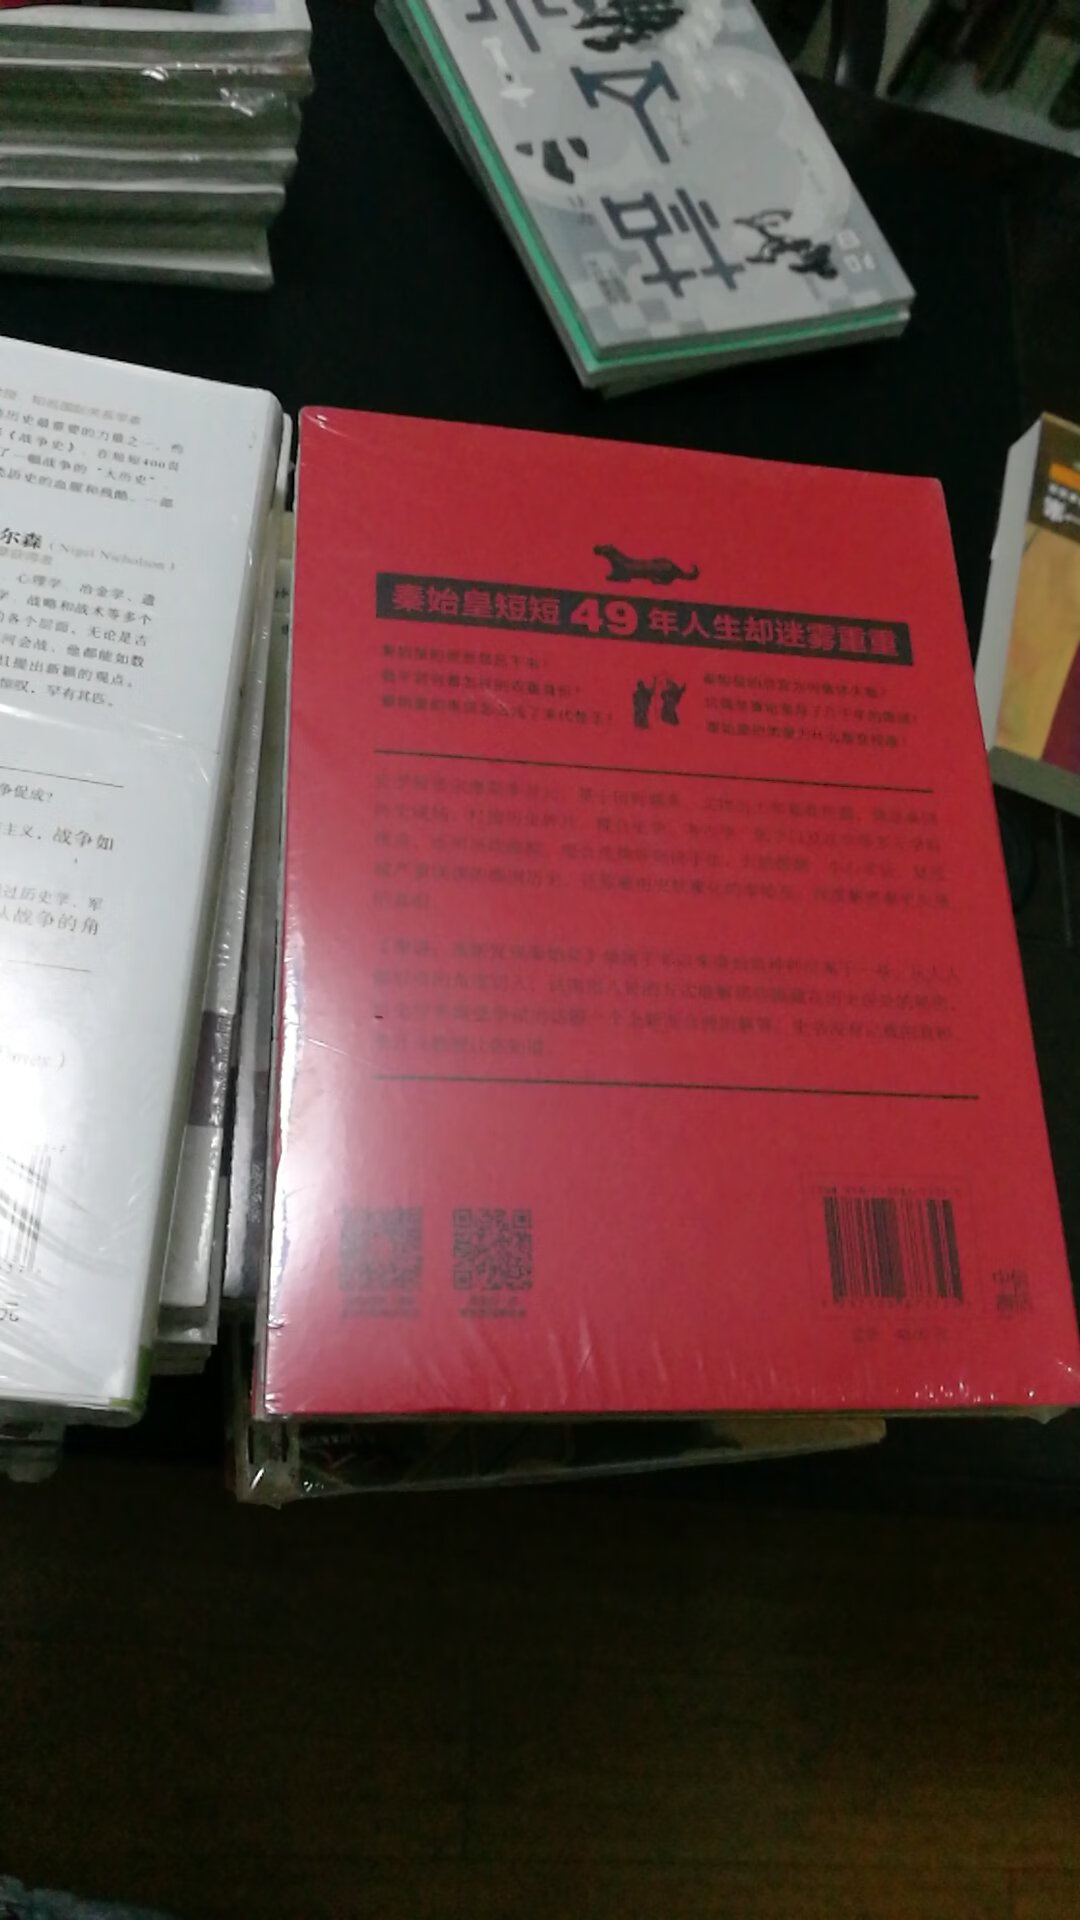 个人对秦朝的历史比较感兴趣。这本书的介绍也很吸引人。